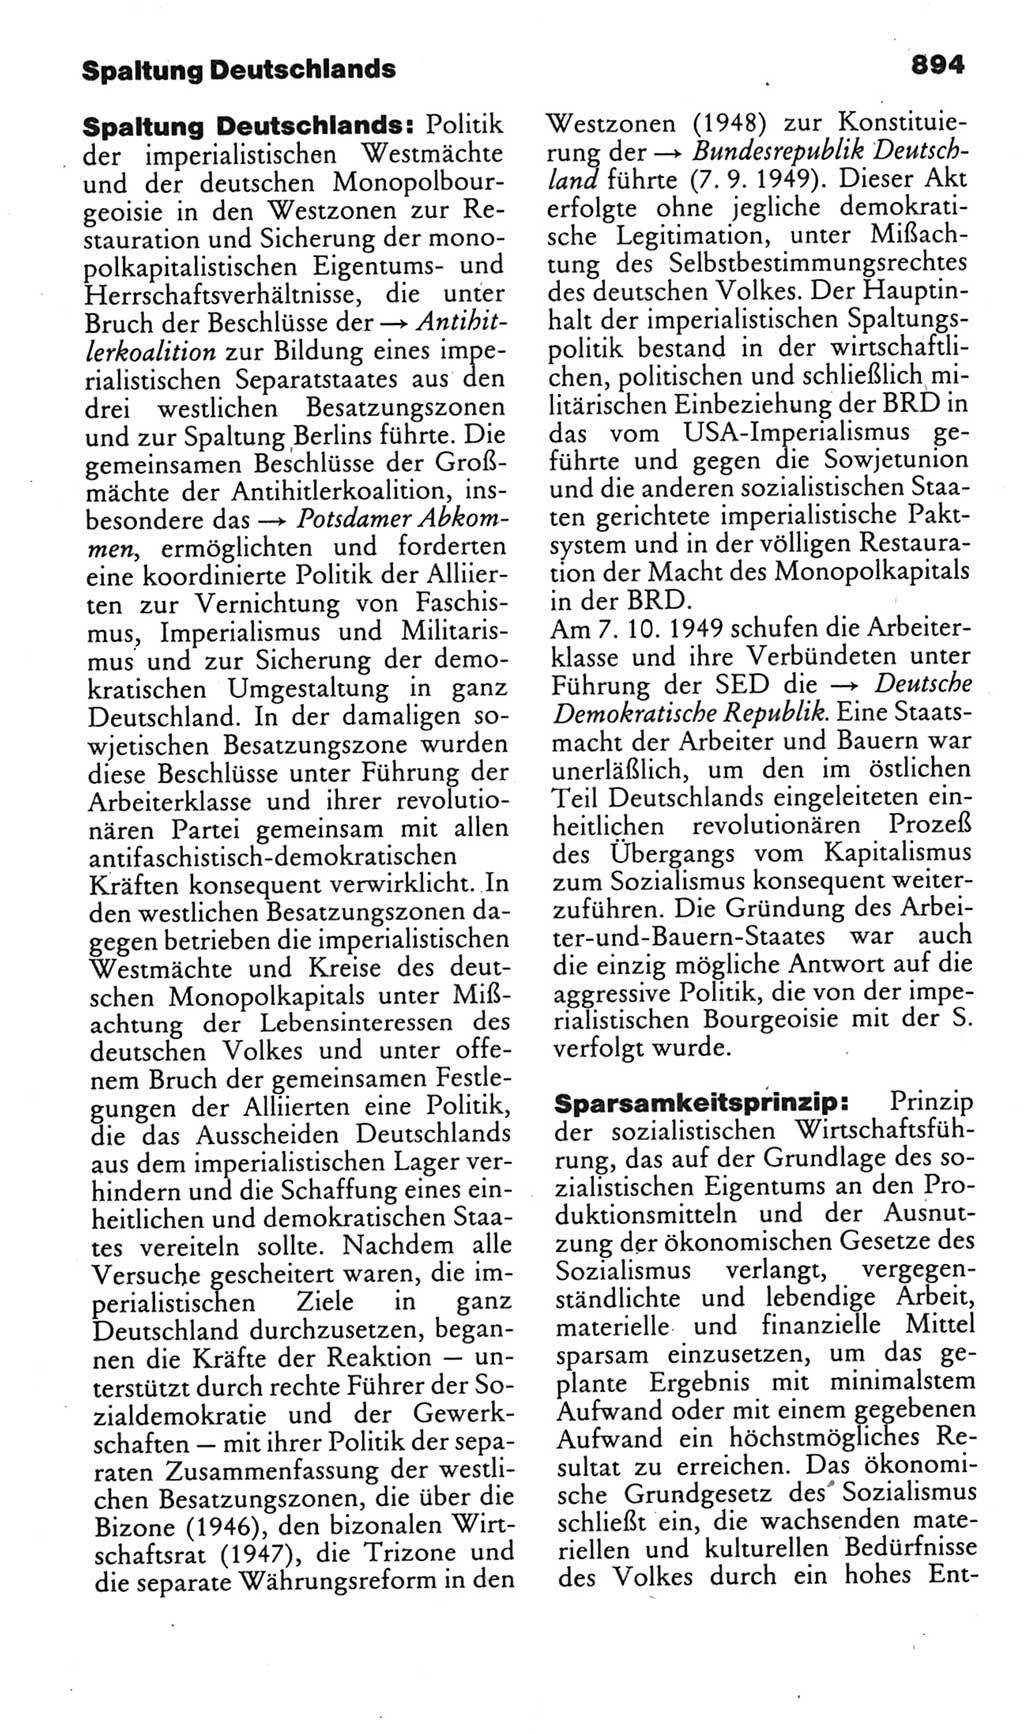 Kleines politisches Wörterbuch [Deutsche Demokratische Republik (DDR)] 1985, Seite 894 (Kl. pol. Wb. DDR 1985, S. 894)